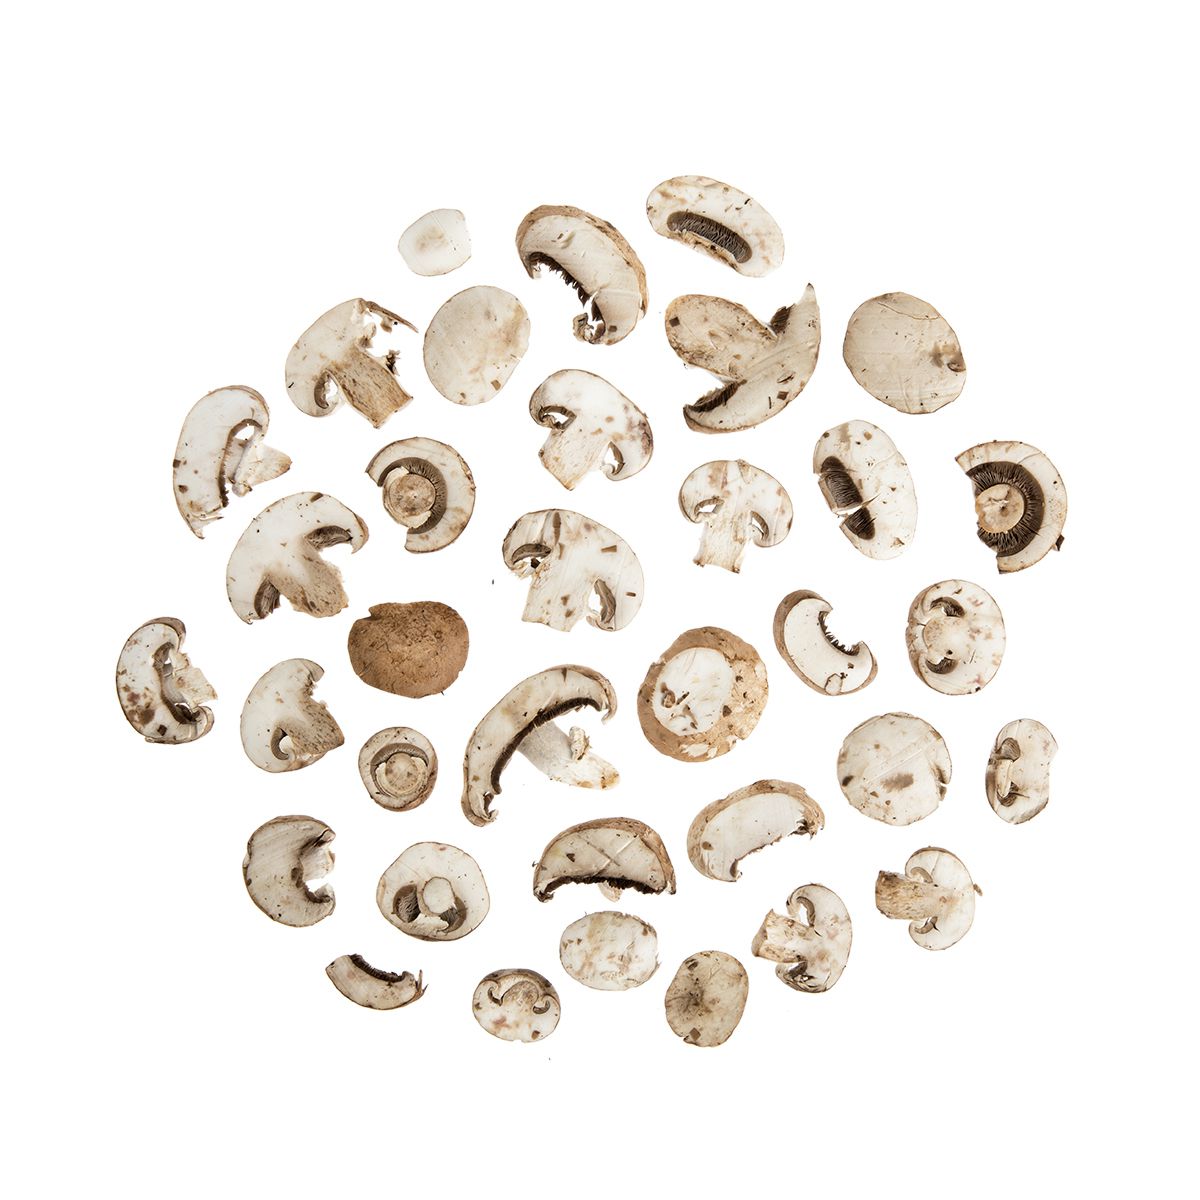 BoxNCase Sliced Cremini Mushrooms 5 LB